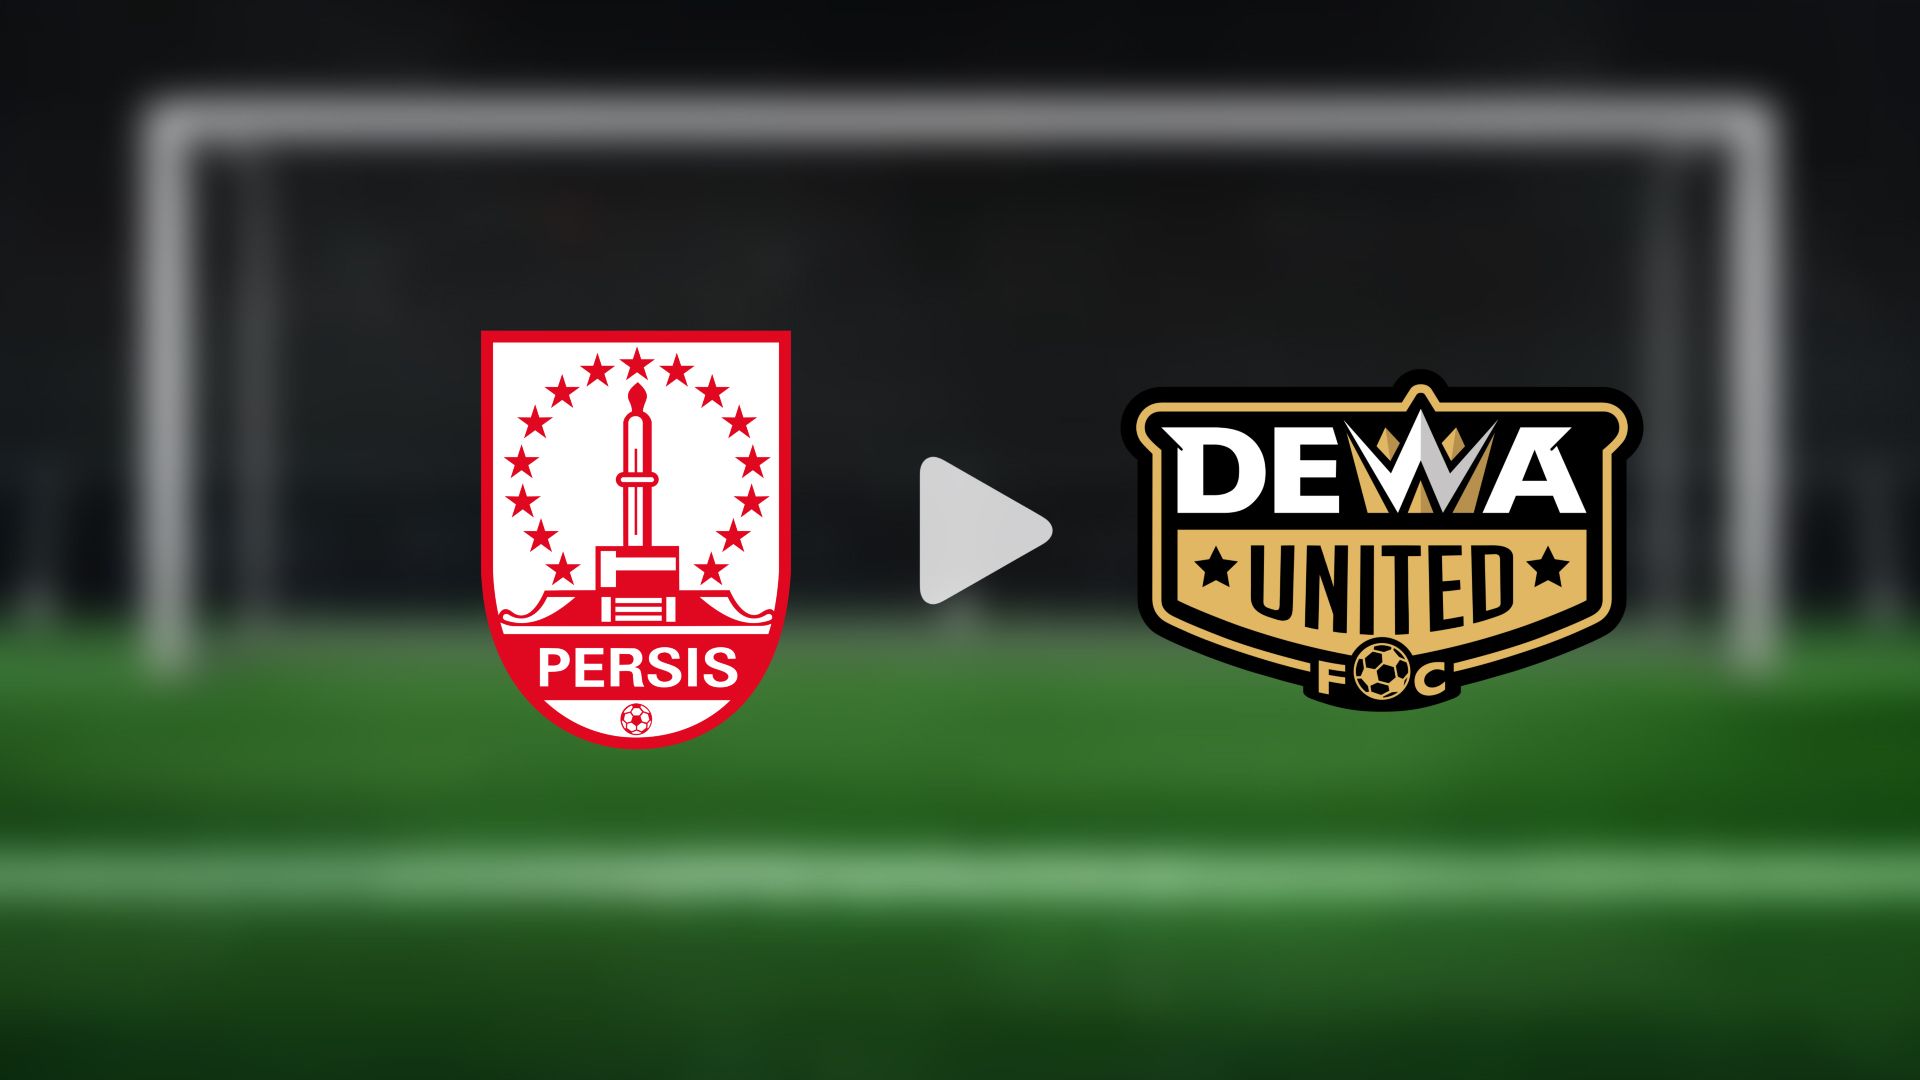 LIVE SCORE DAN HASIL AKHIR Dewa United vs Persis Solo 3-2, Berikut Skor